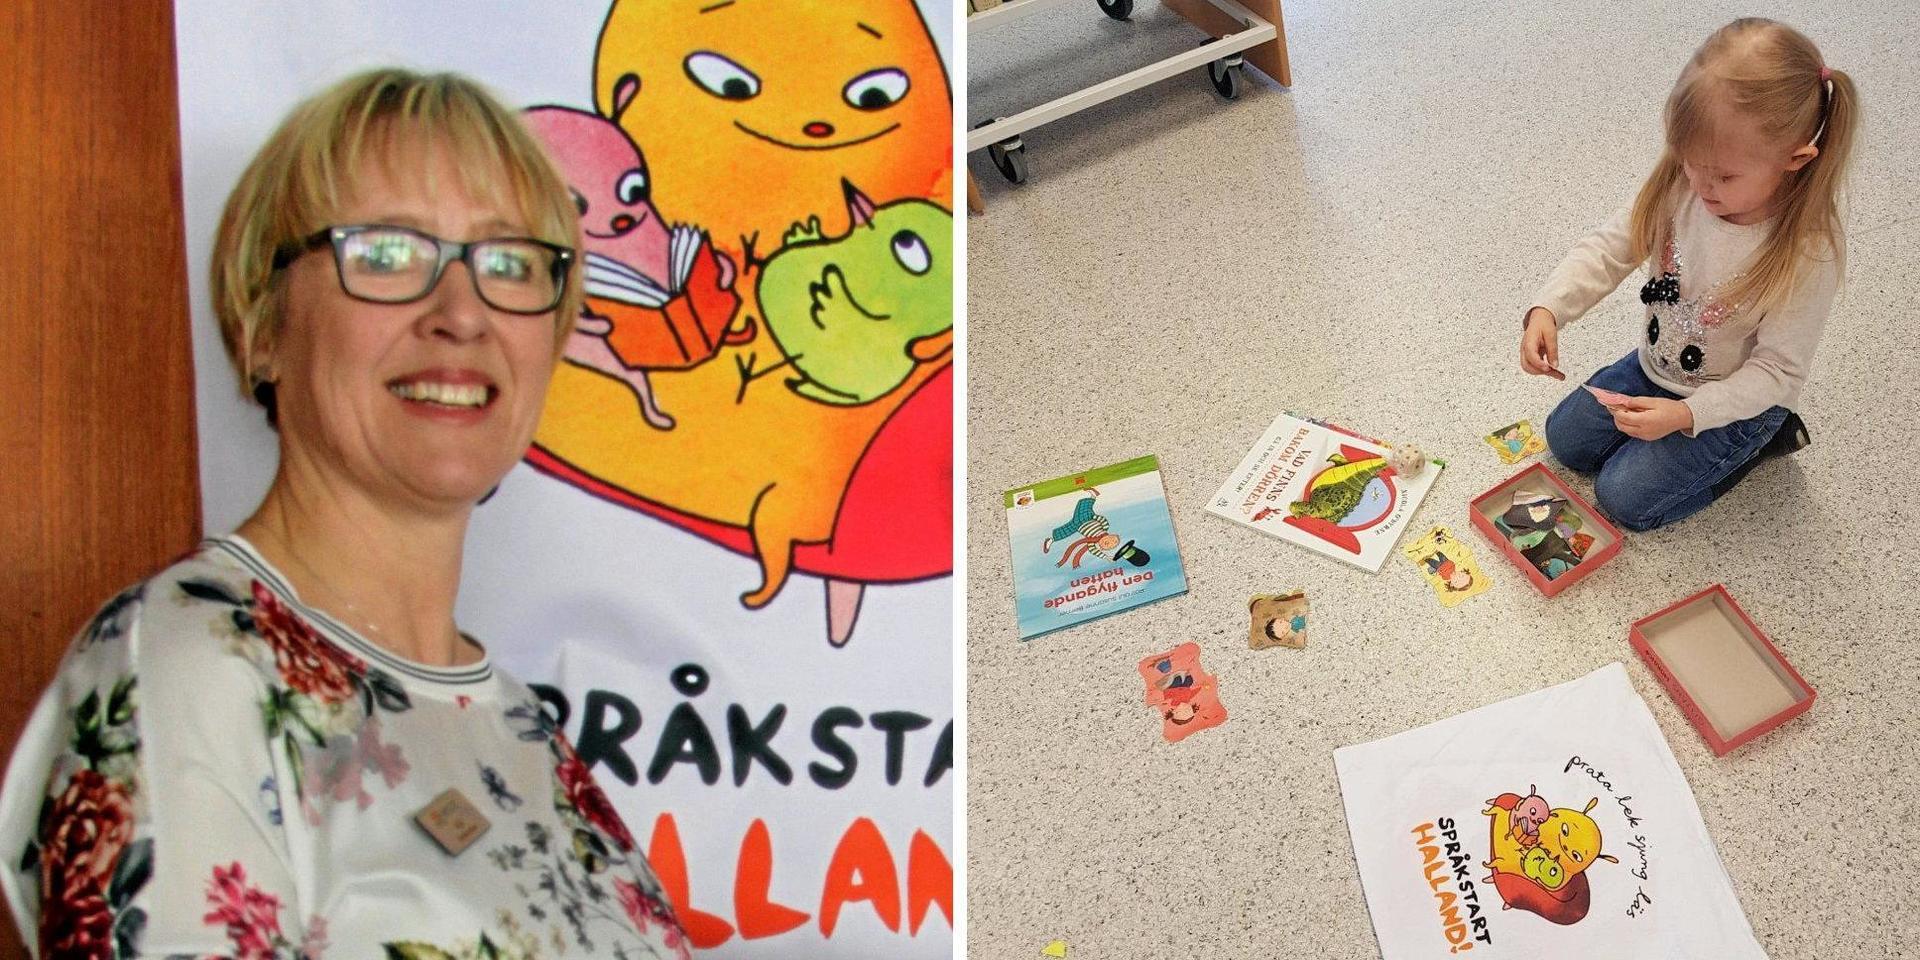 Projektet Språkstart i Hylte leds av Åsa Engberg. En av deltagarna är treåriga Nathalie Svensson som tyckte att spelet i språkpaketet var spännande.